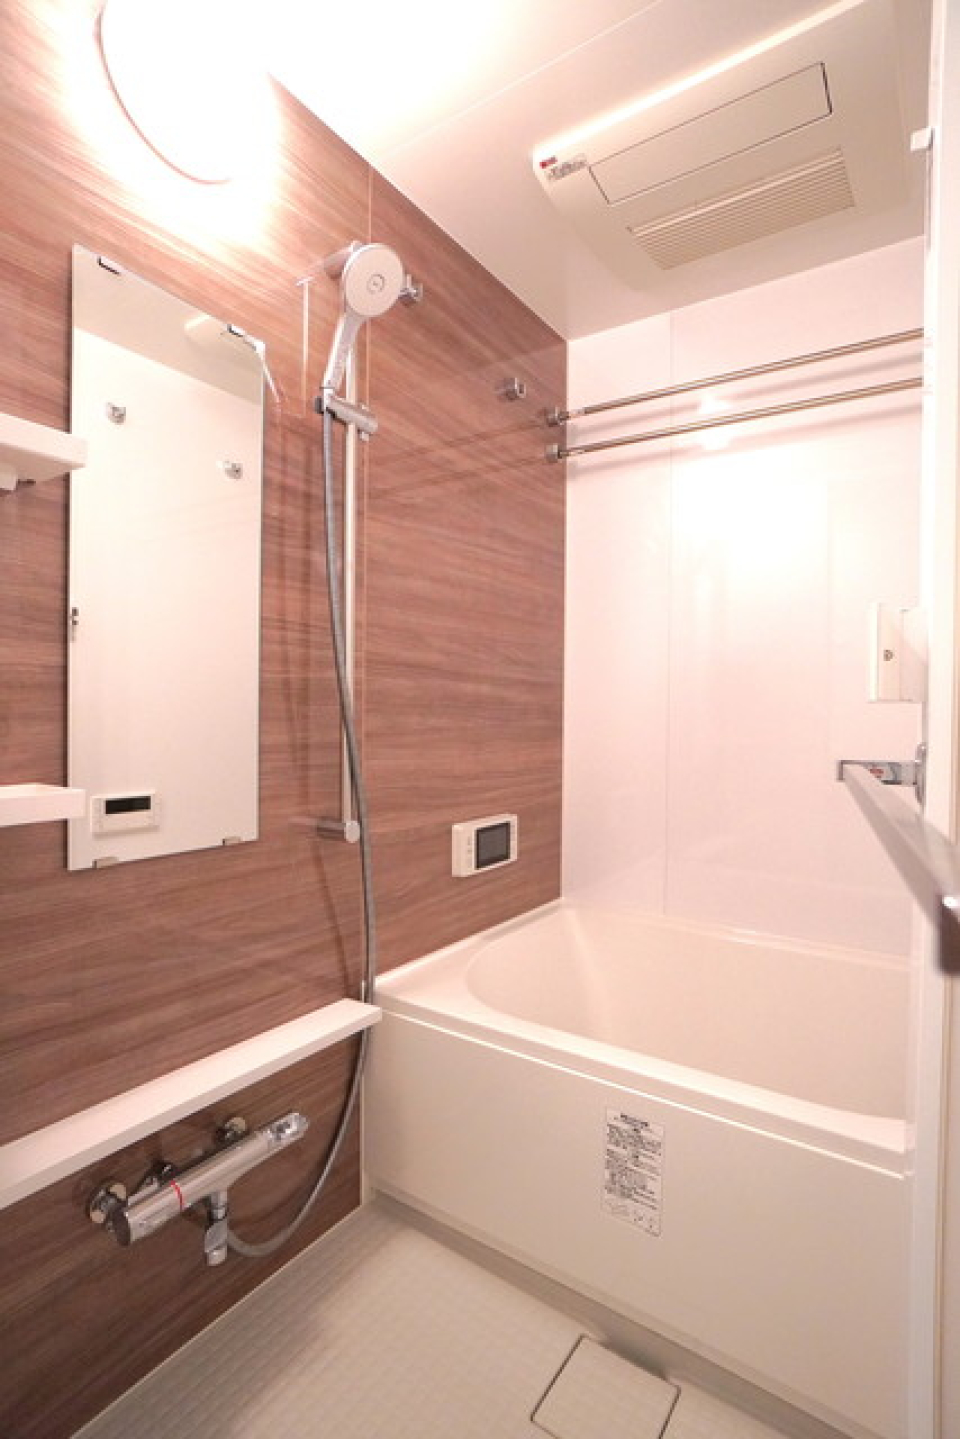 ナチュラルテイストなパネルが採用された浴室。※写真は同タイプ住戸です。